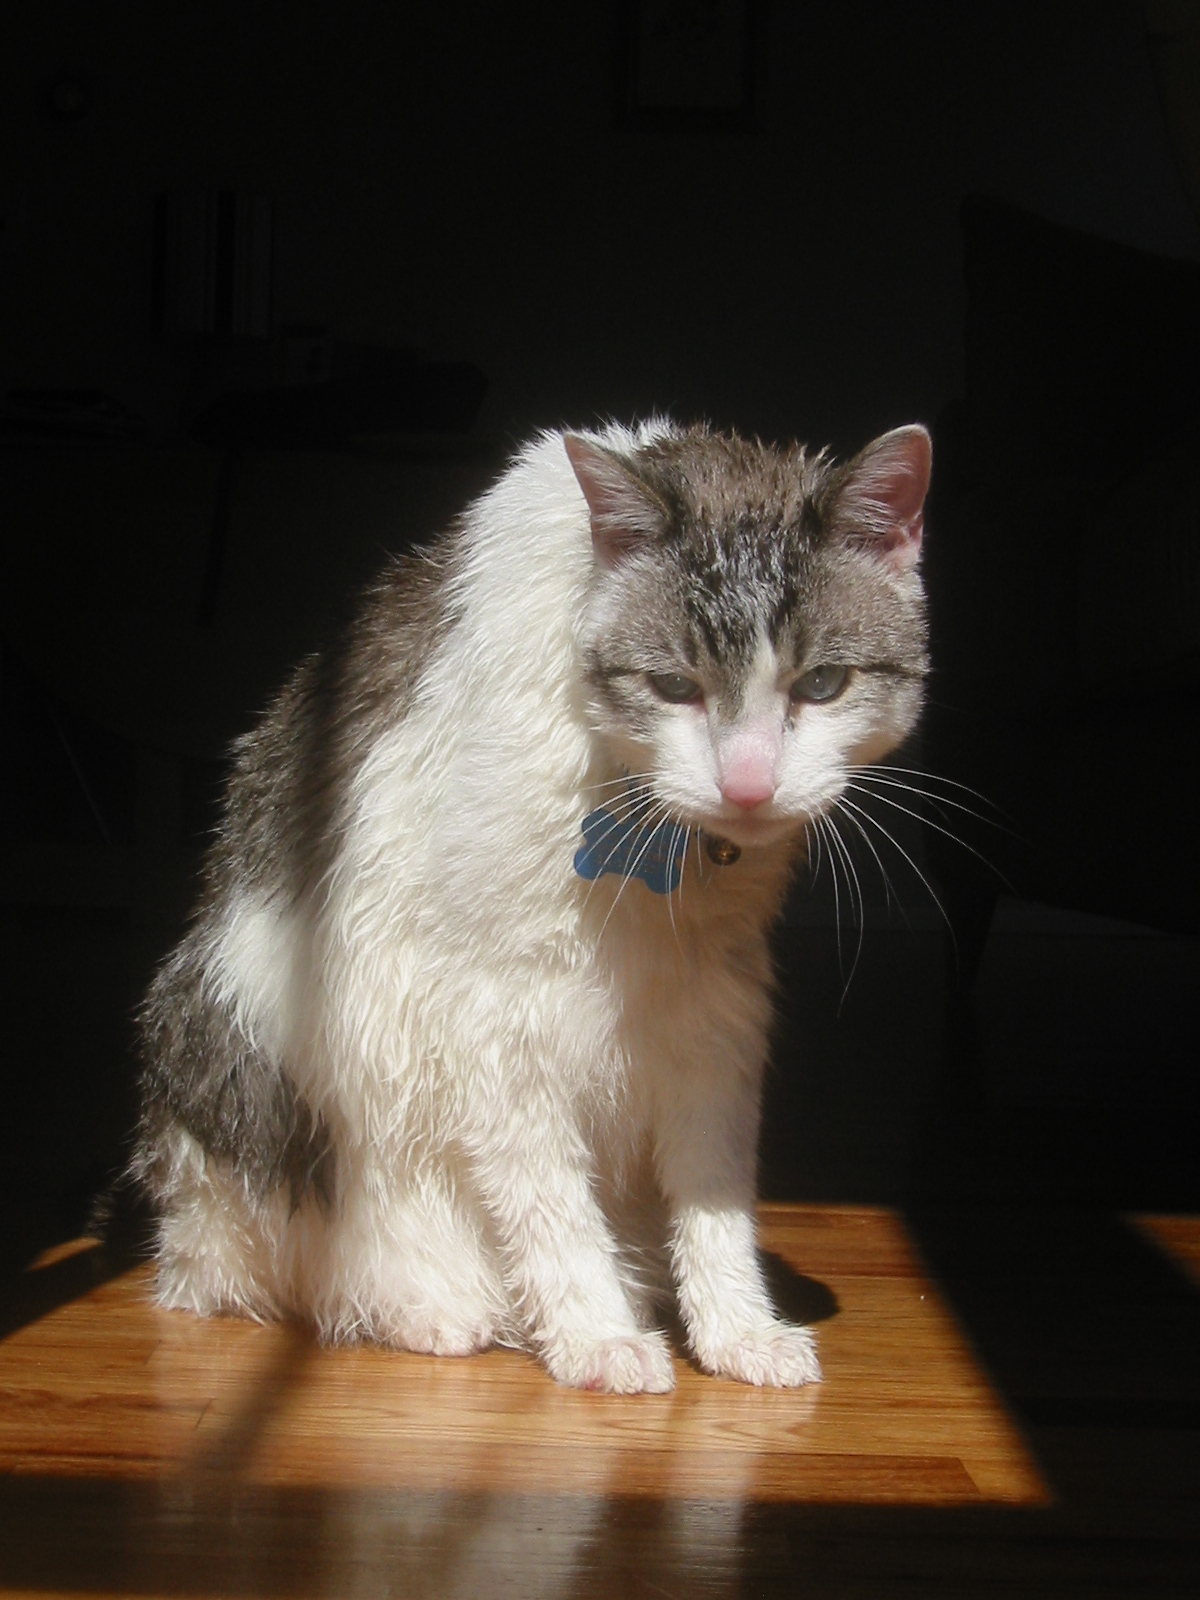 File:Wet cat.jpg - Wikipedia